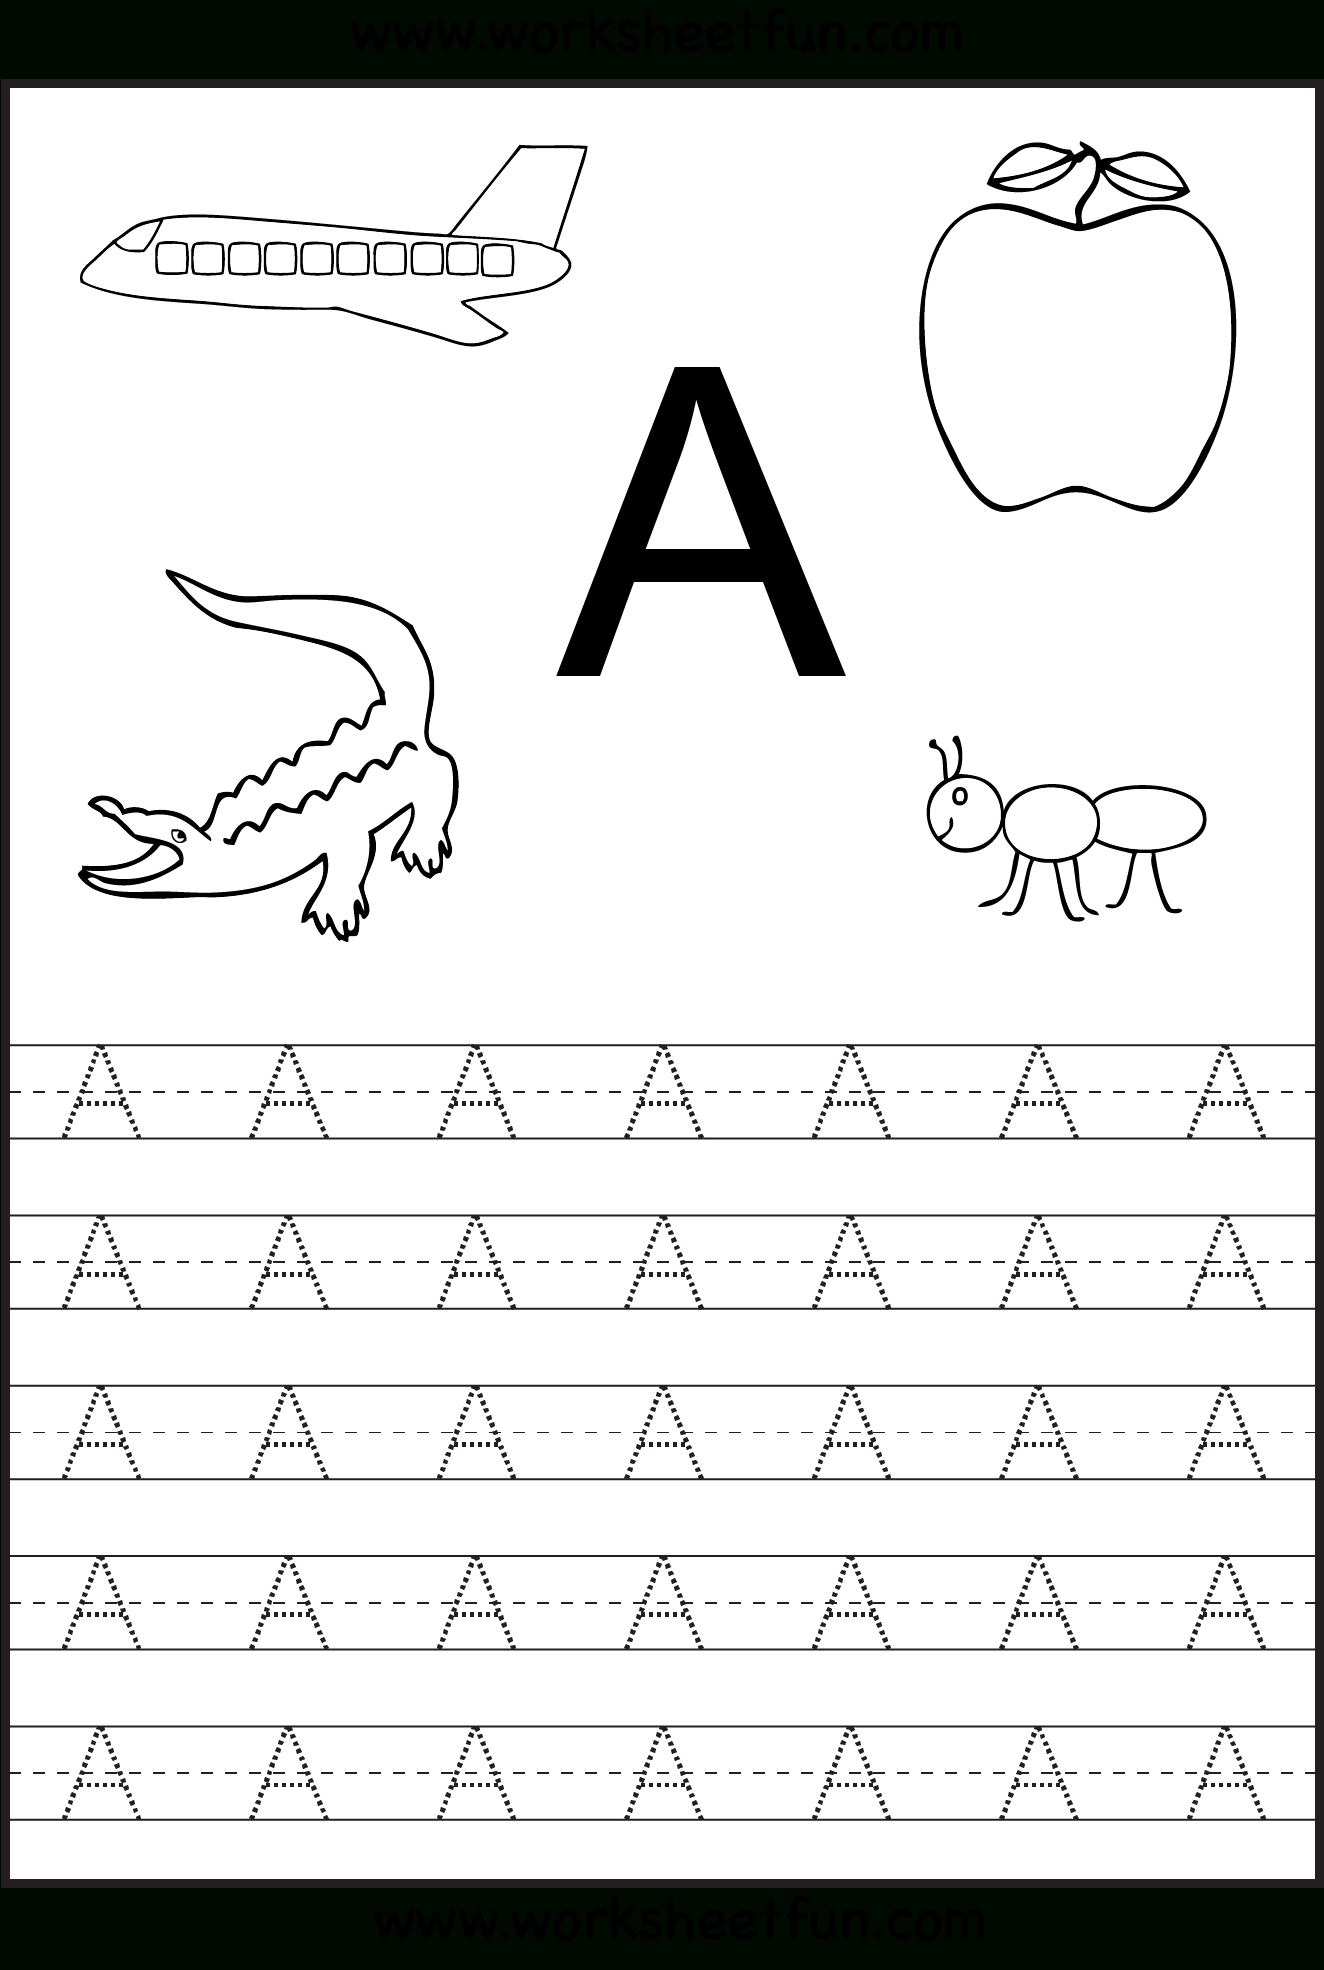 Trazos Letras | Preschool Worksheets, Kindergarten in Tracing Letters Worksheets Kindergarten